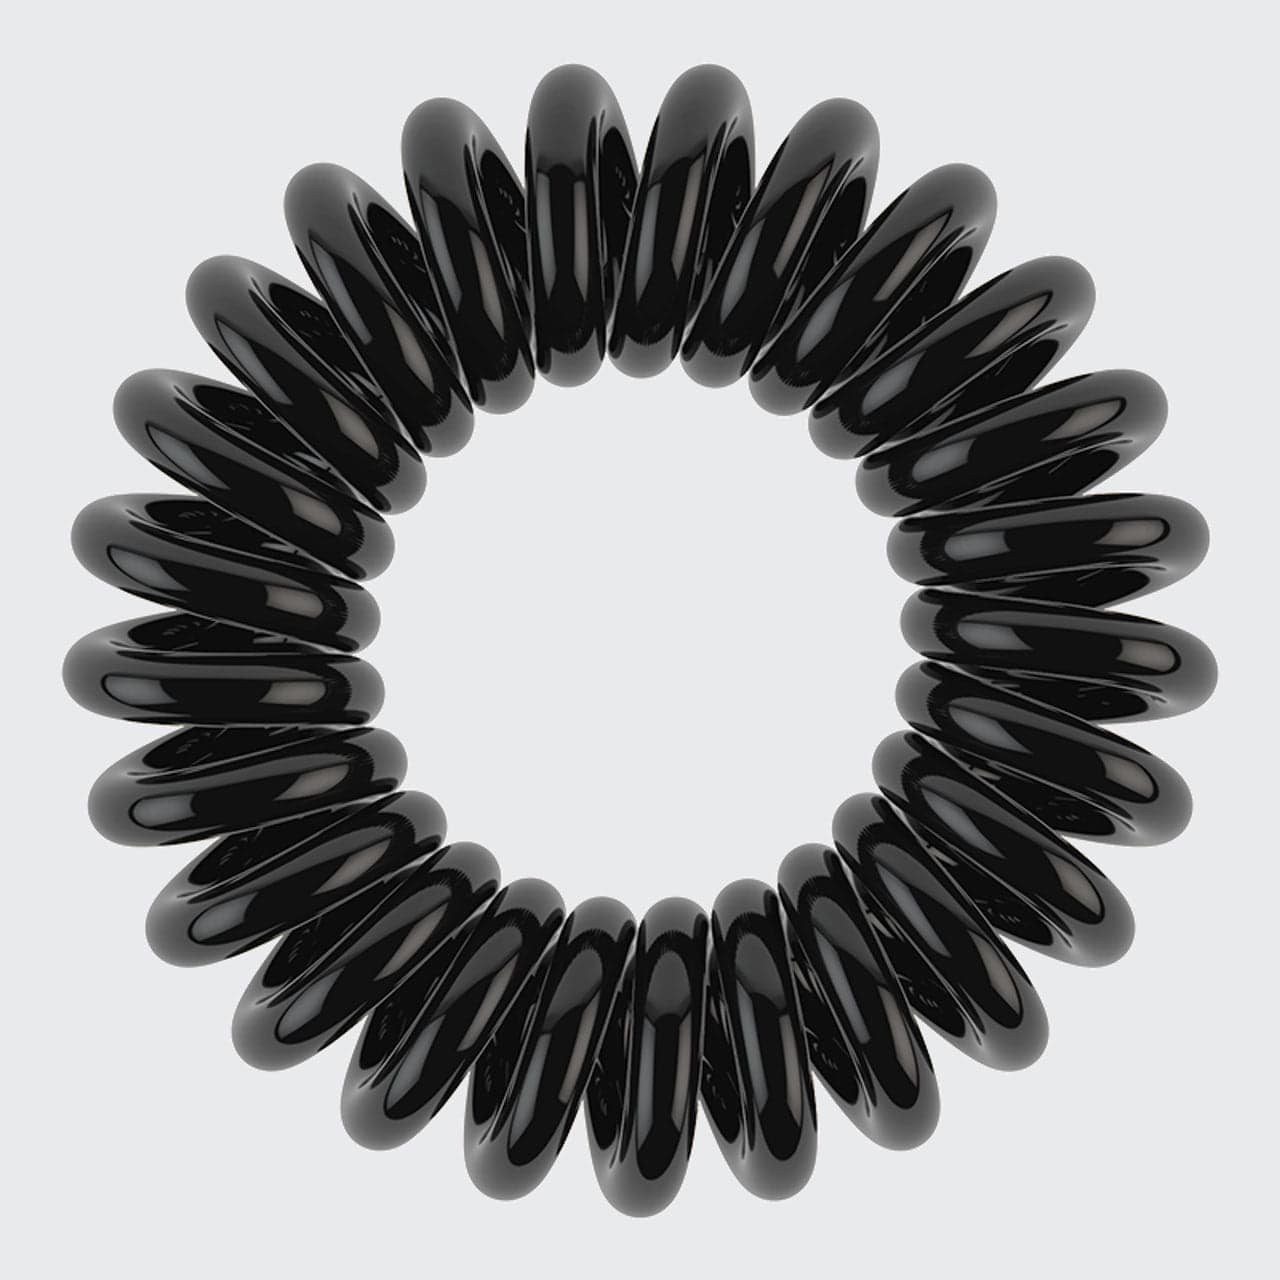 Spiral Hair Ties 8 Pack - Black